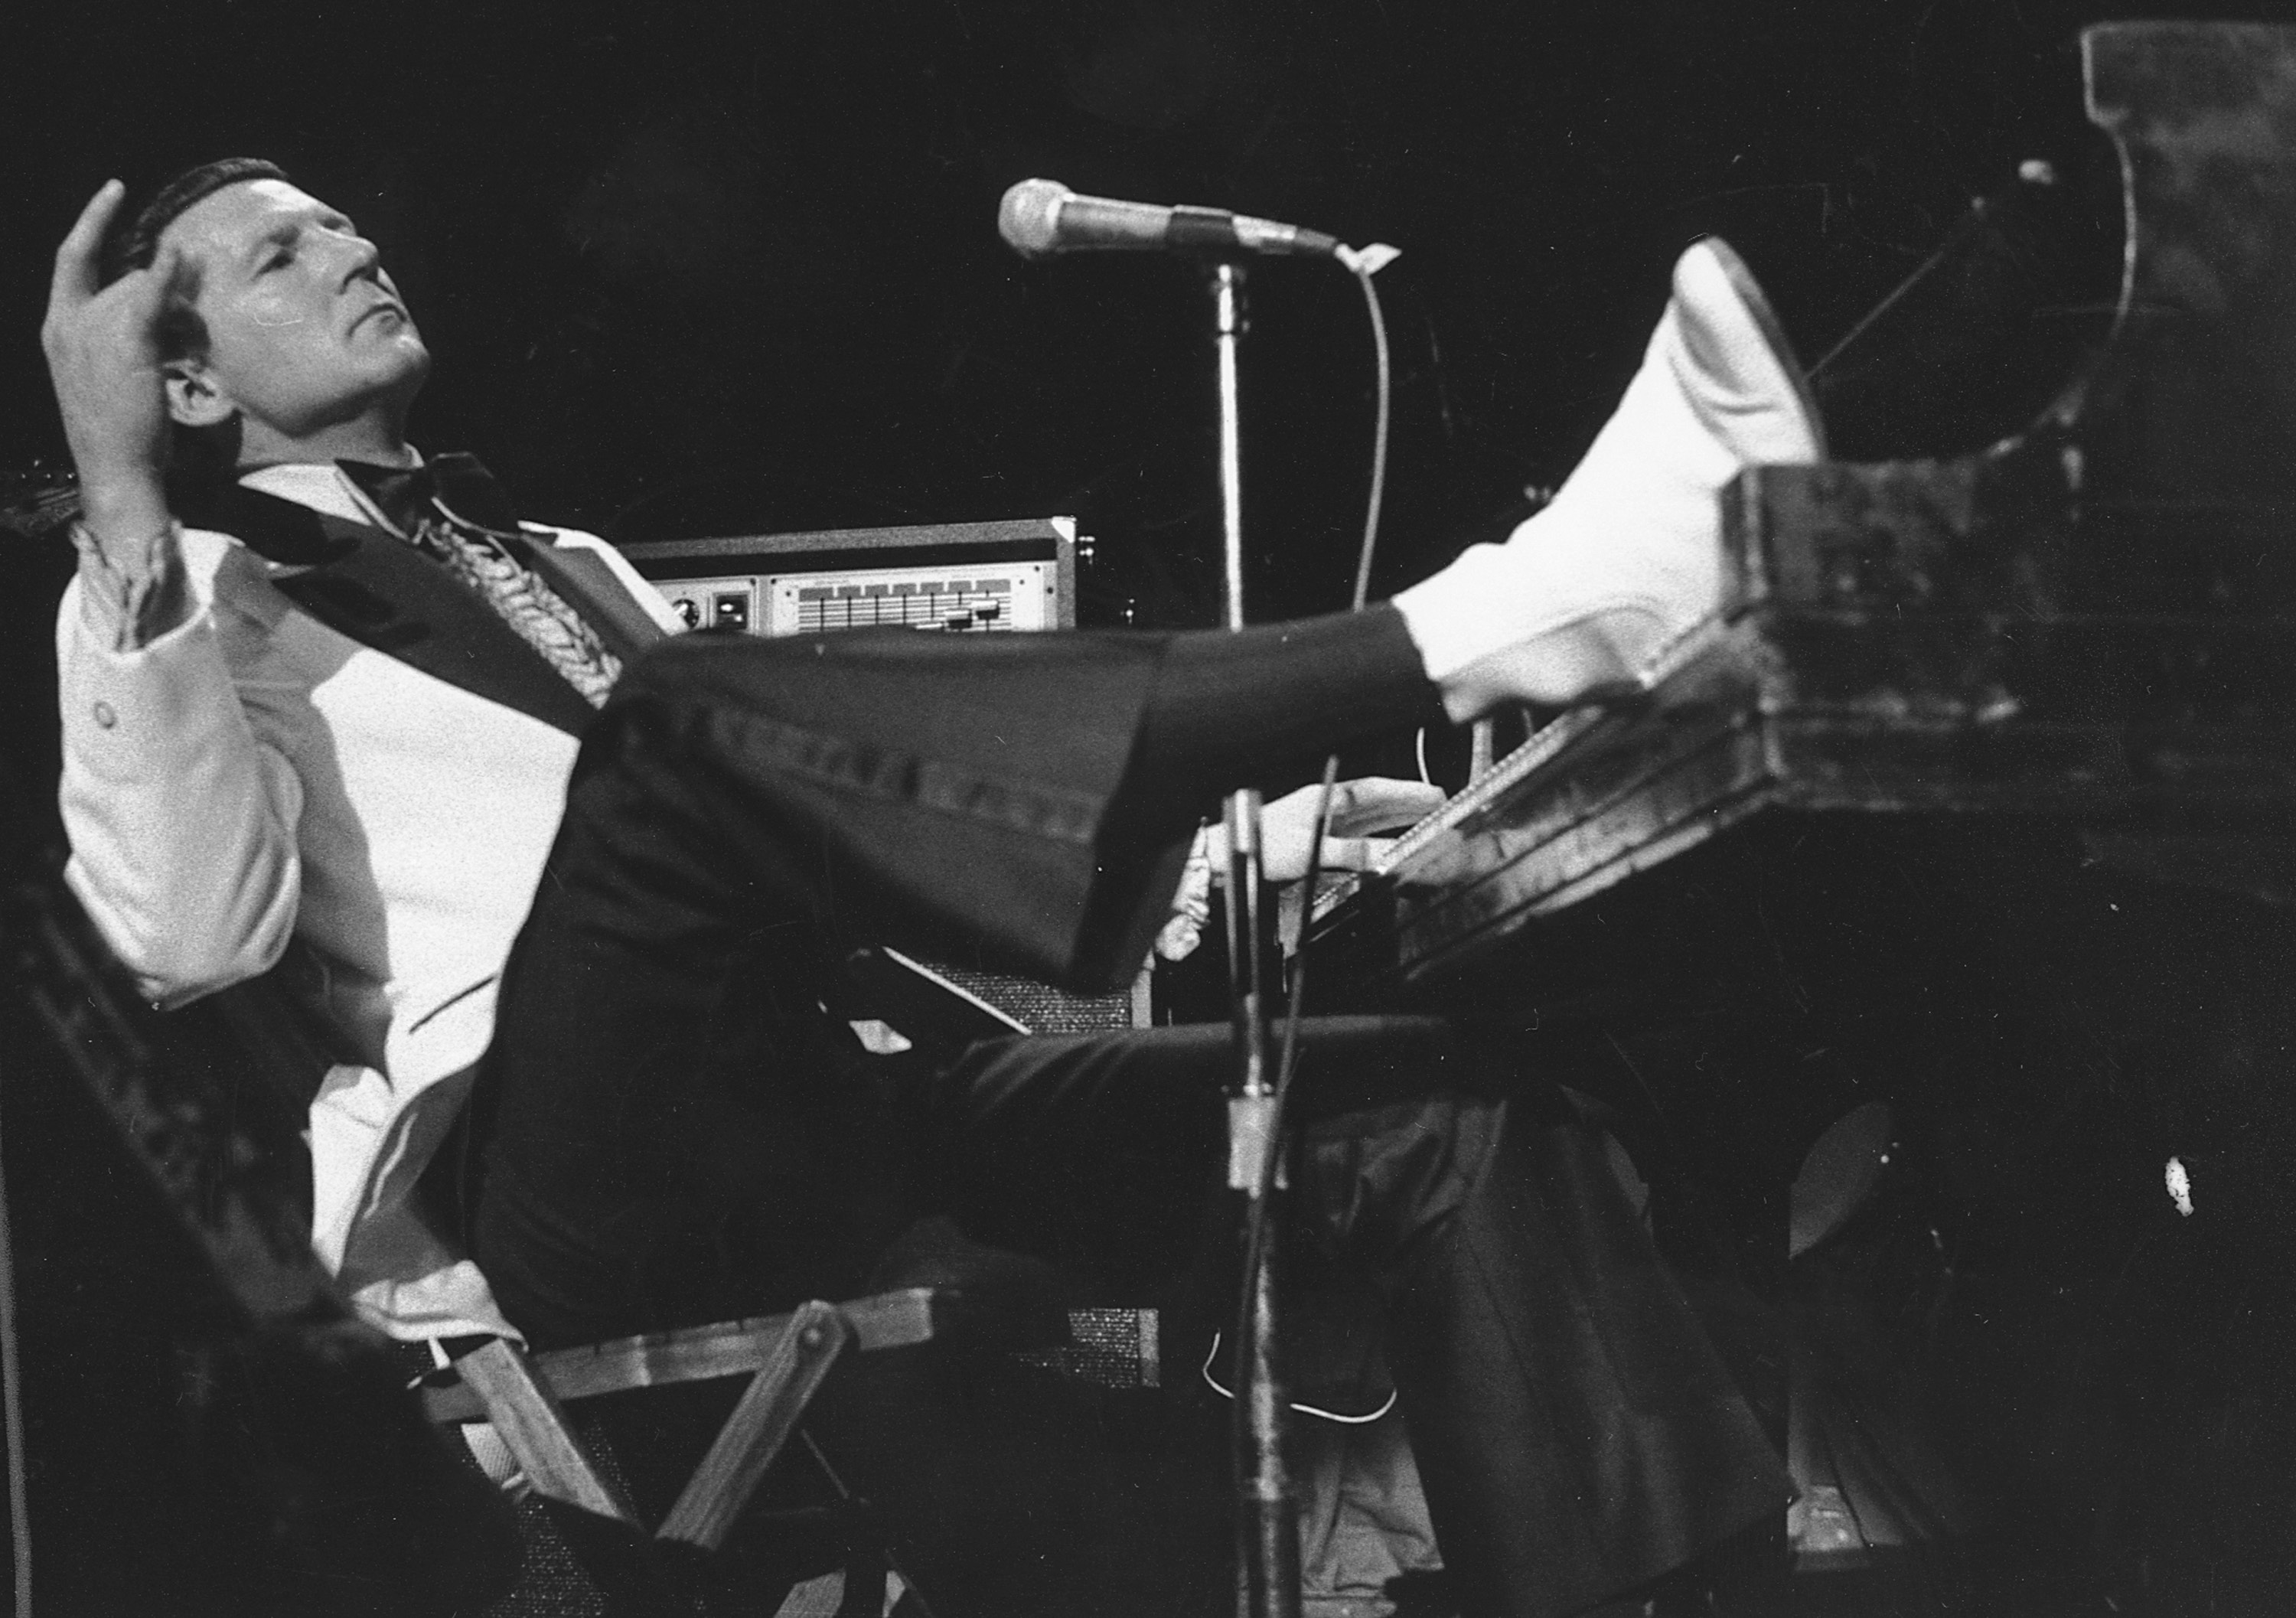 Jerry Lee Lewis, rock 'n' roll star, dies at 87